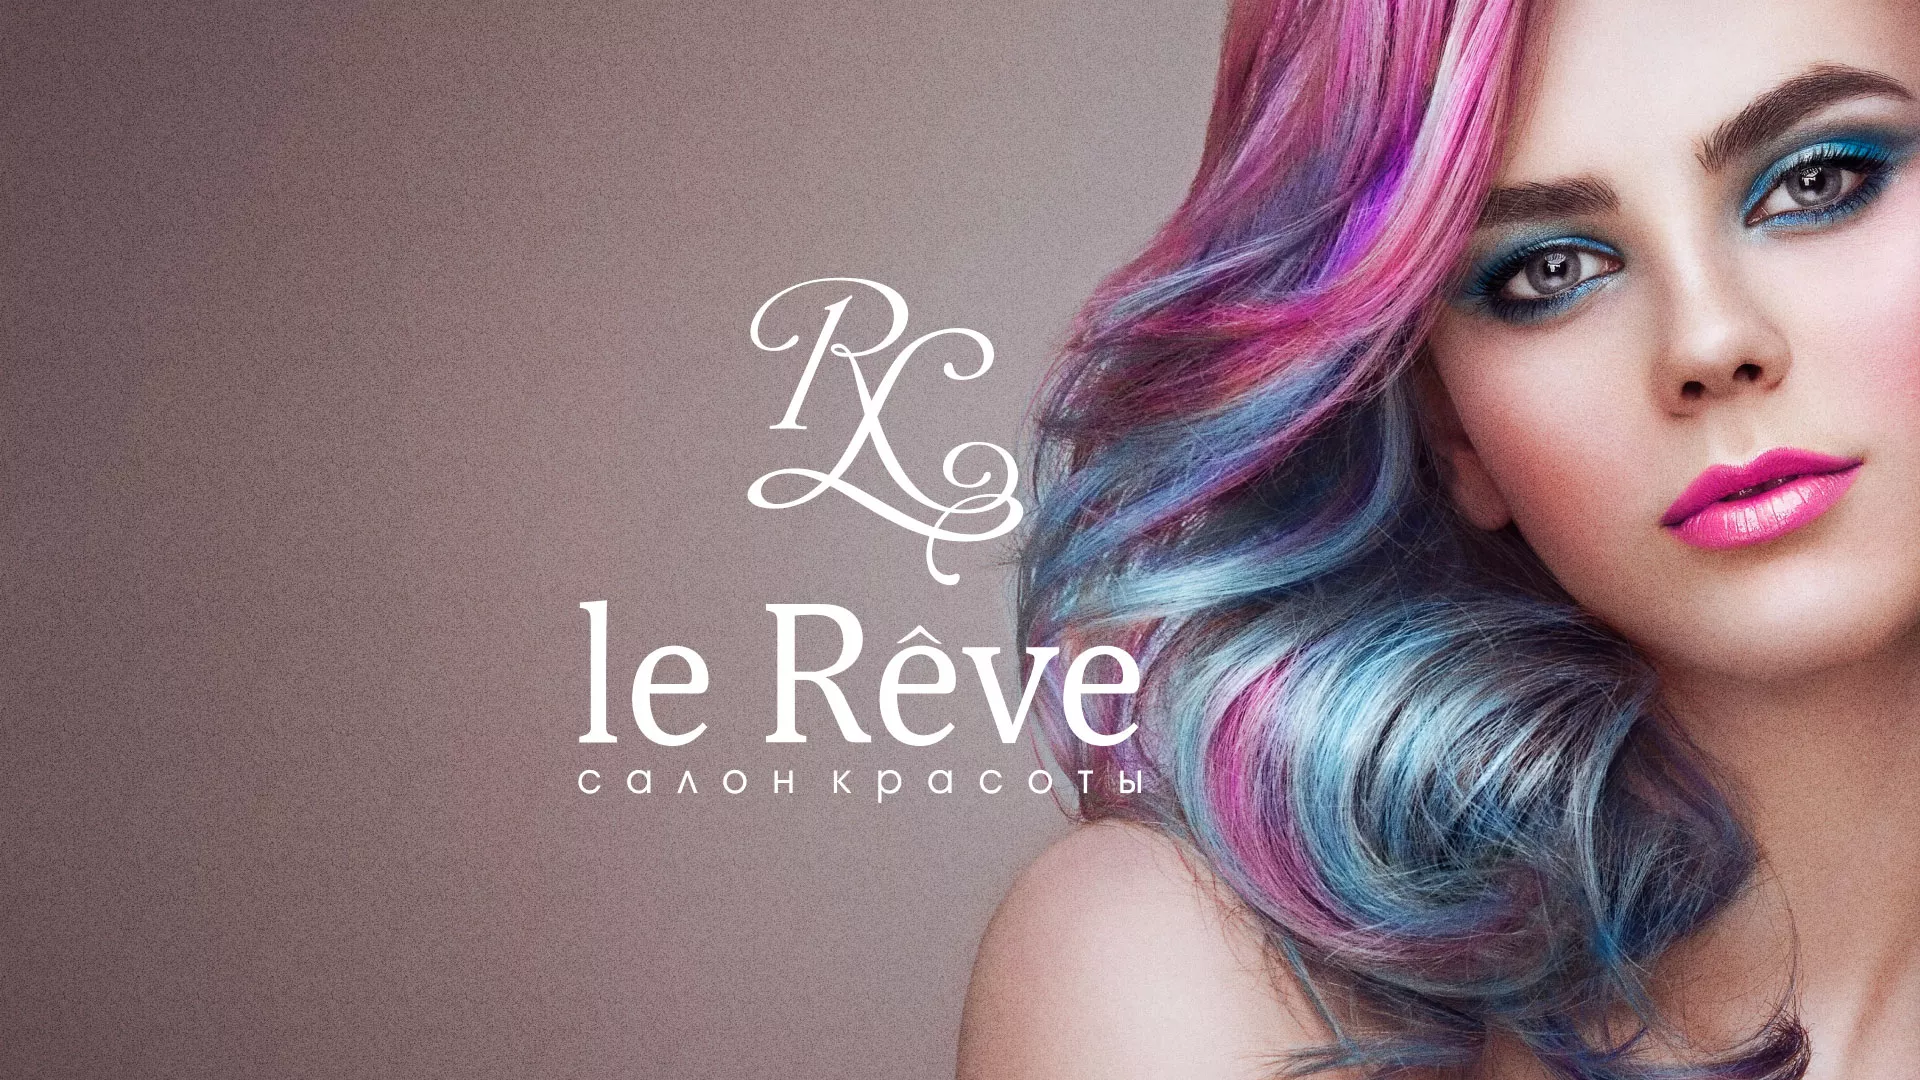 Создание сайта для салона красоты «Le Reve» в Искитиме